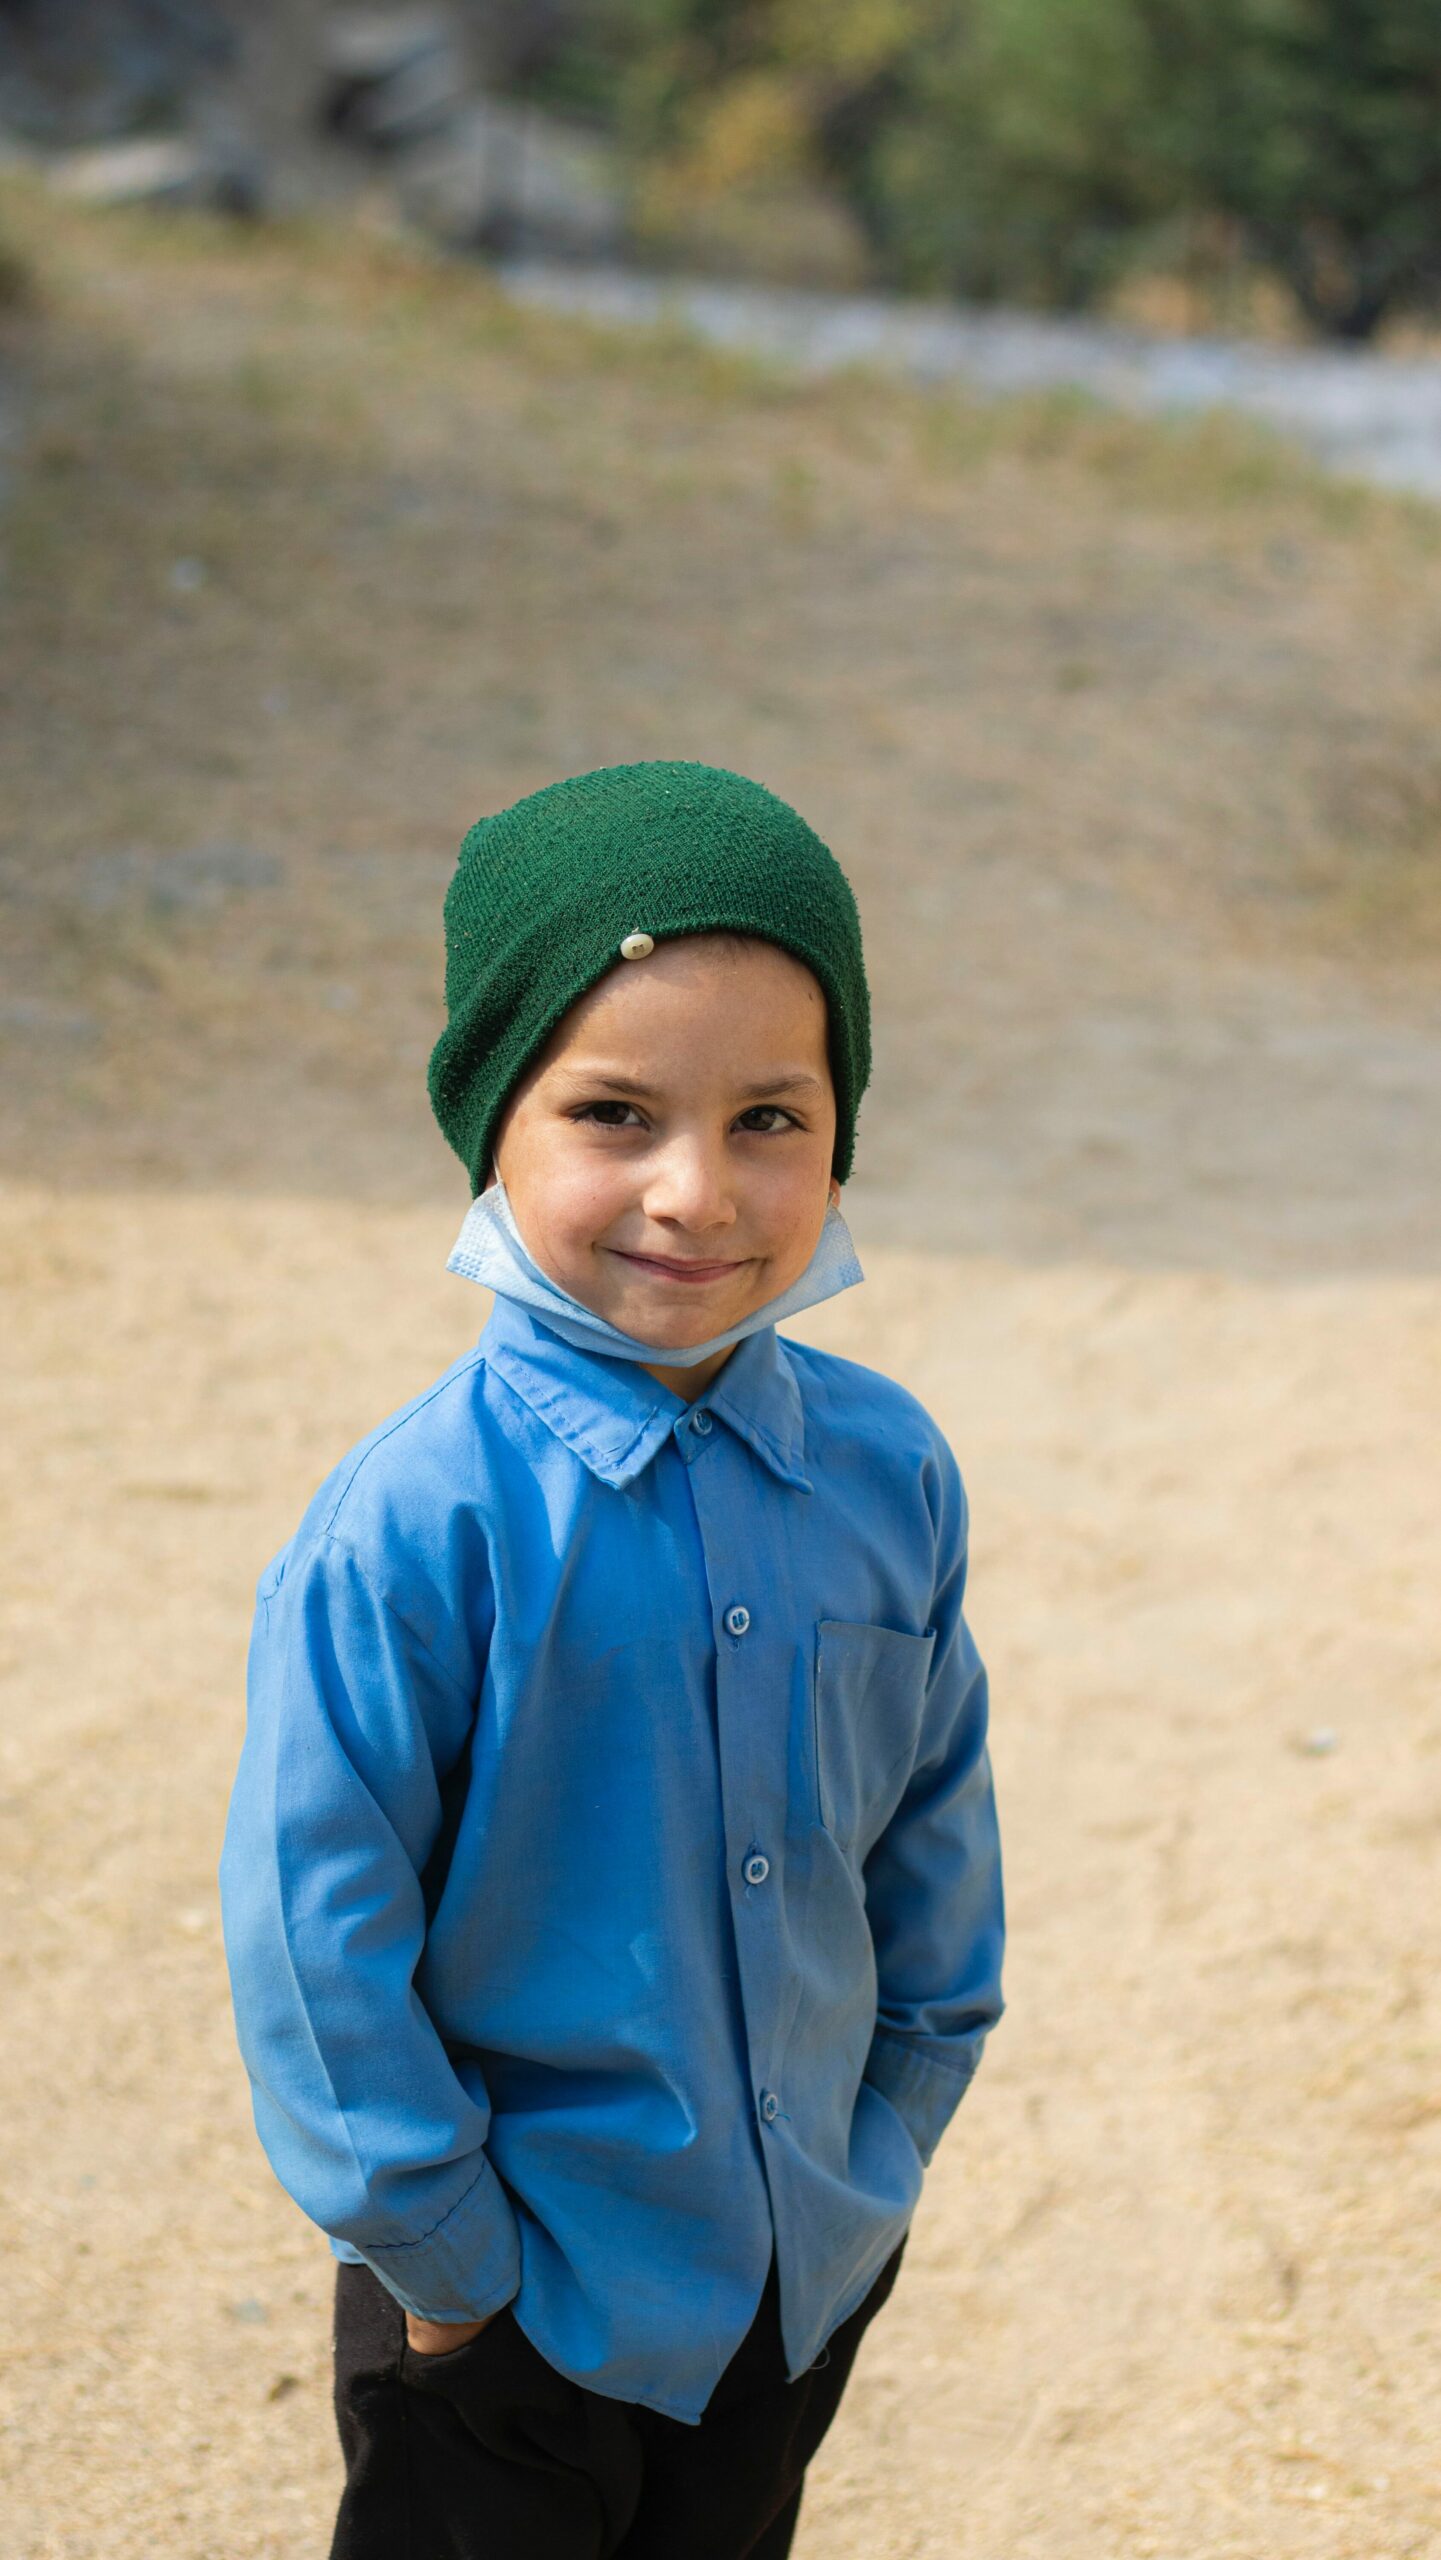 Spenden bewirkt einen positiven Unterschied, wie sie durch den lächelnden Jungen repräsentiert wird.